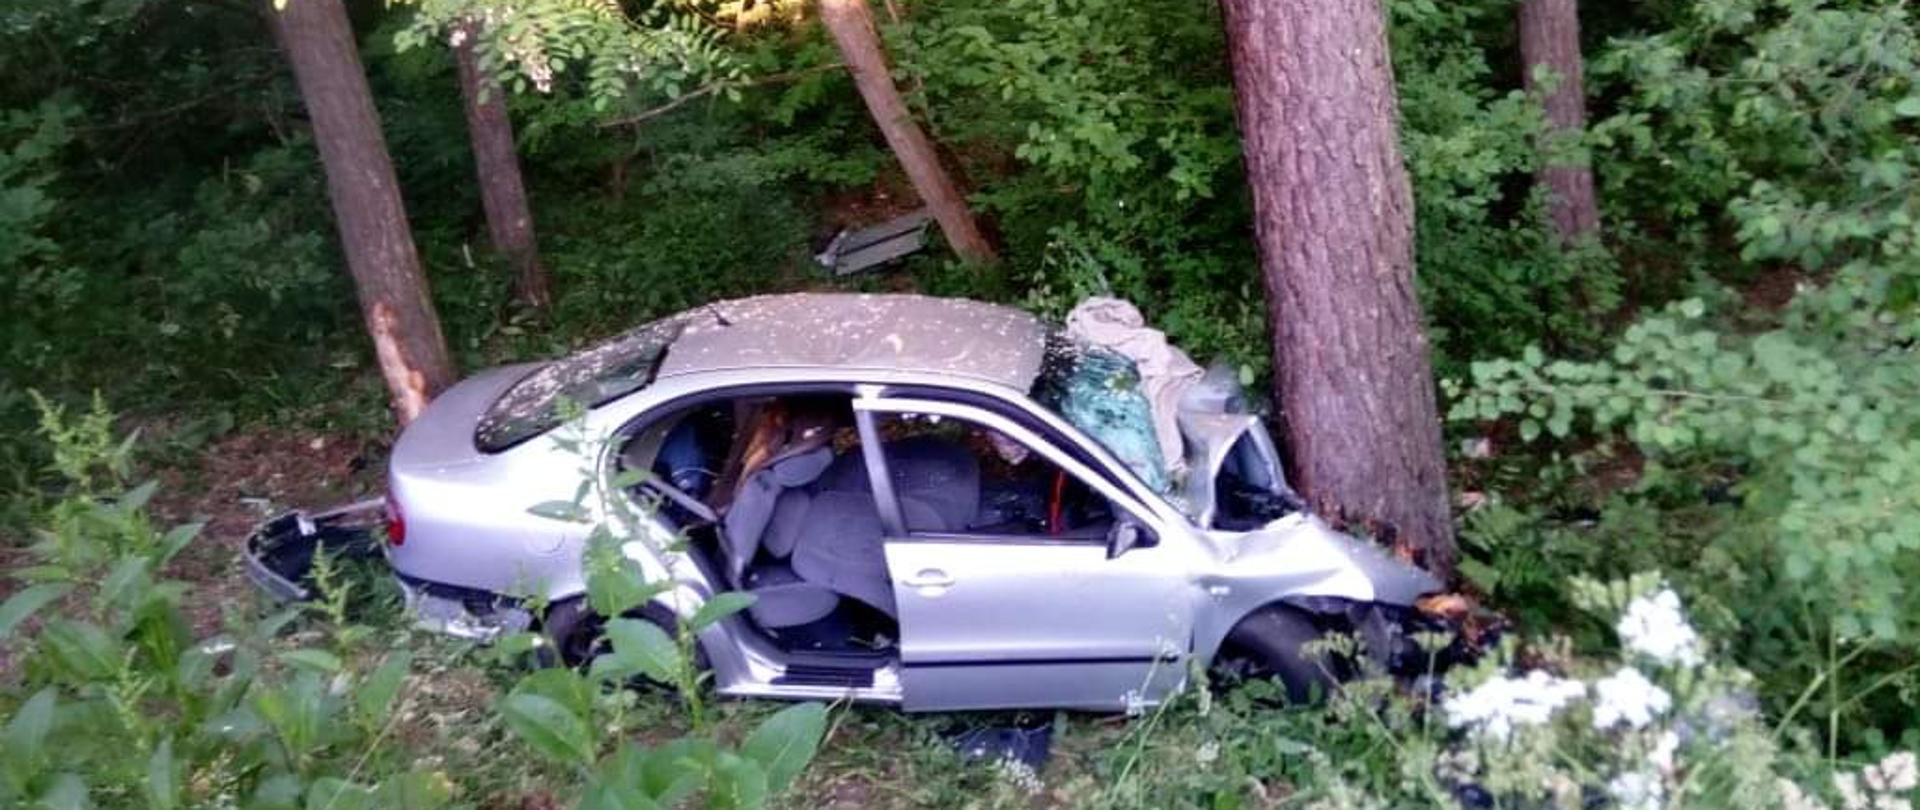 Zdjęcie przedstawia rozbity samochód osobowy wbity przodem w drzewo. Do okola widać drzewa.